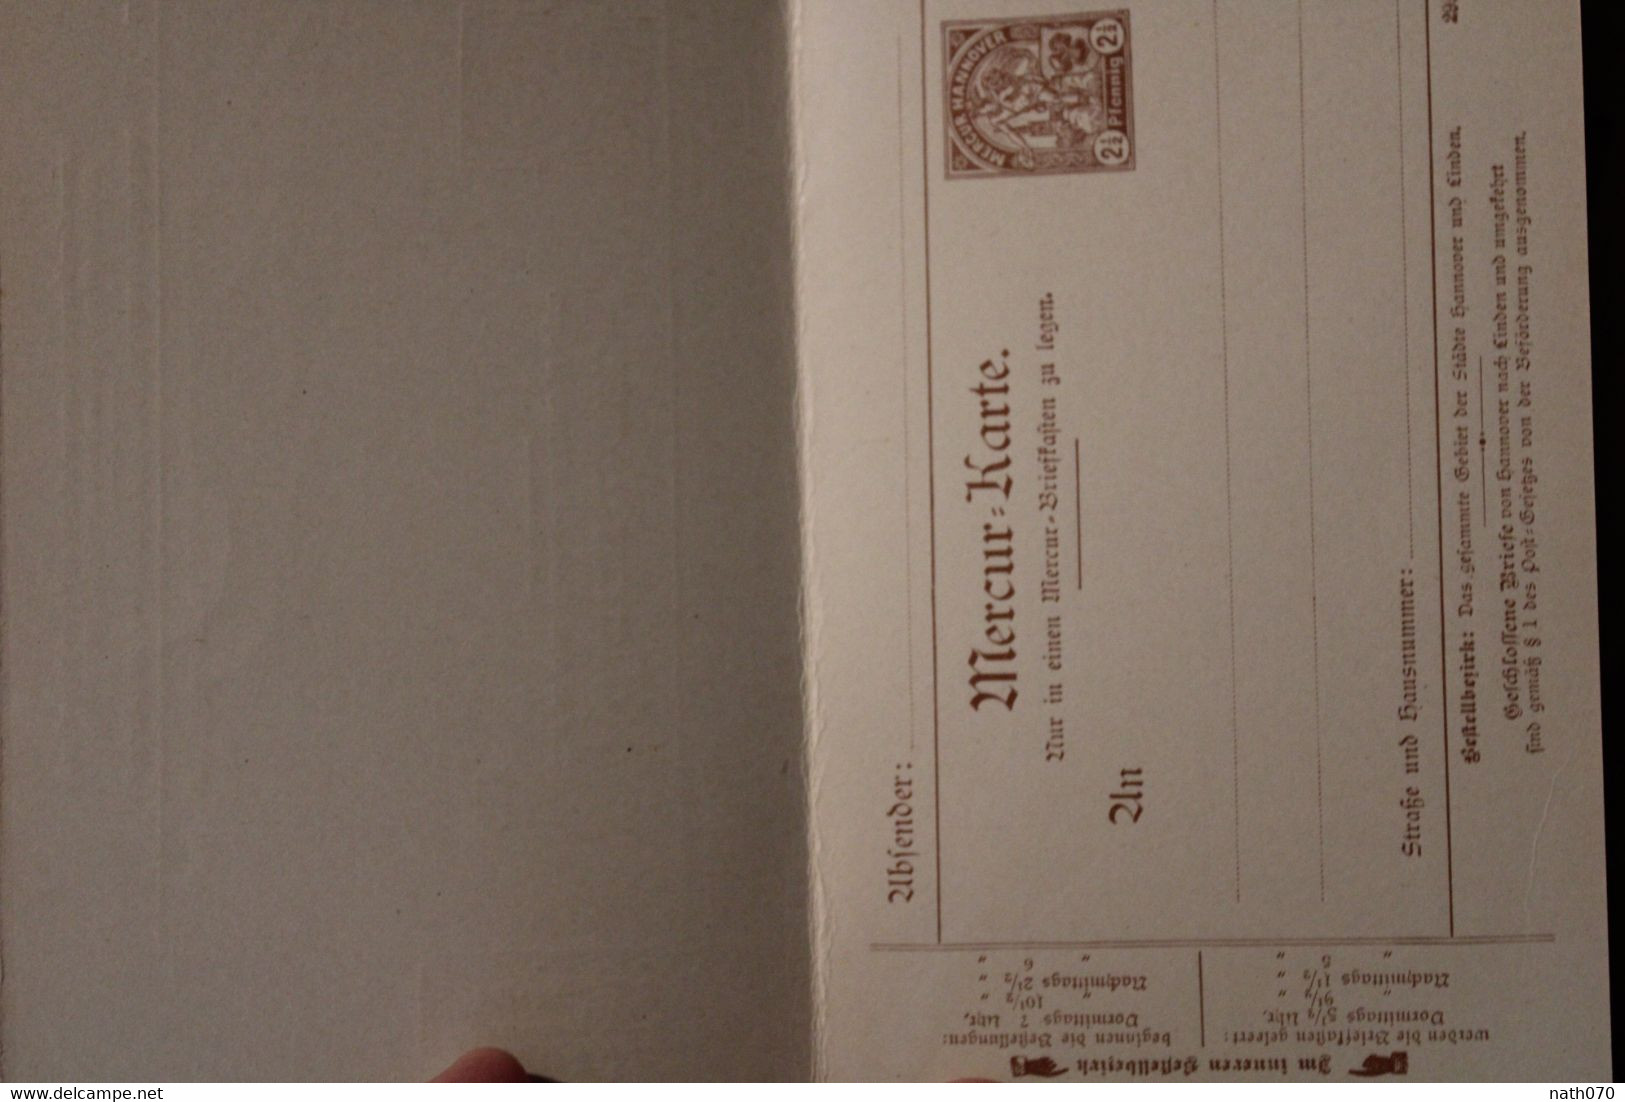 1900's Hannover Mercur Karte Stadtbriefe Privatpost Stadtpost Privat Poste Privée Allemagne Cover - Privatpost